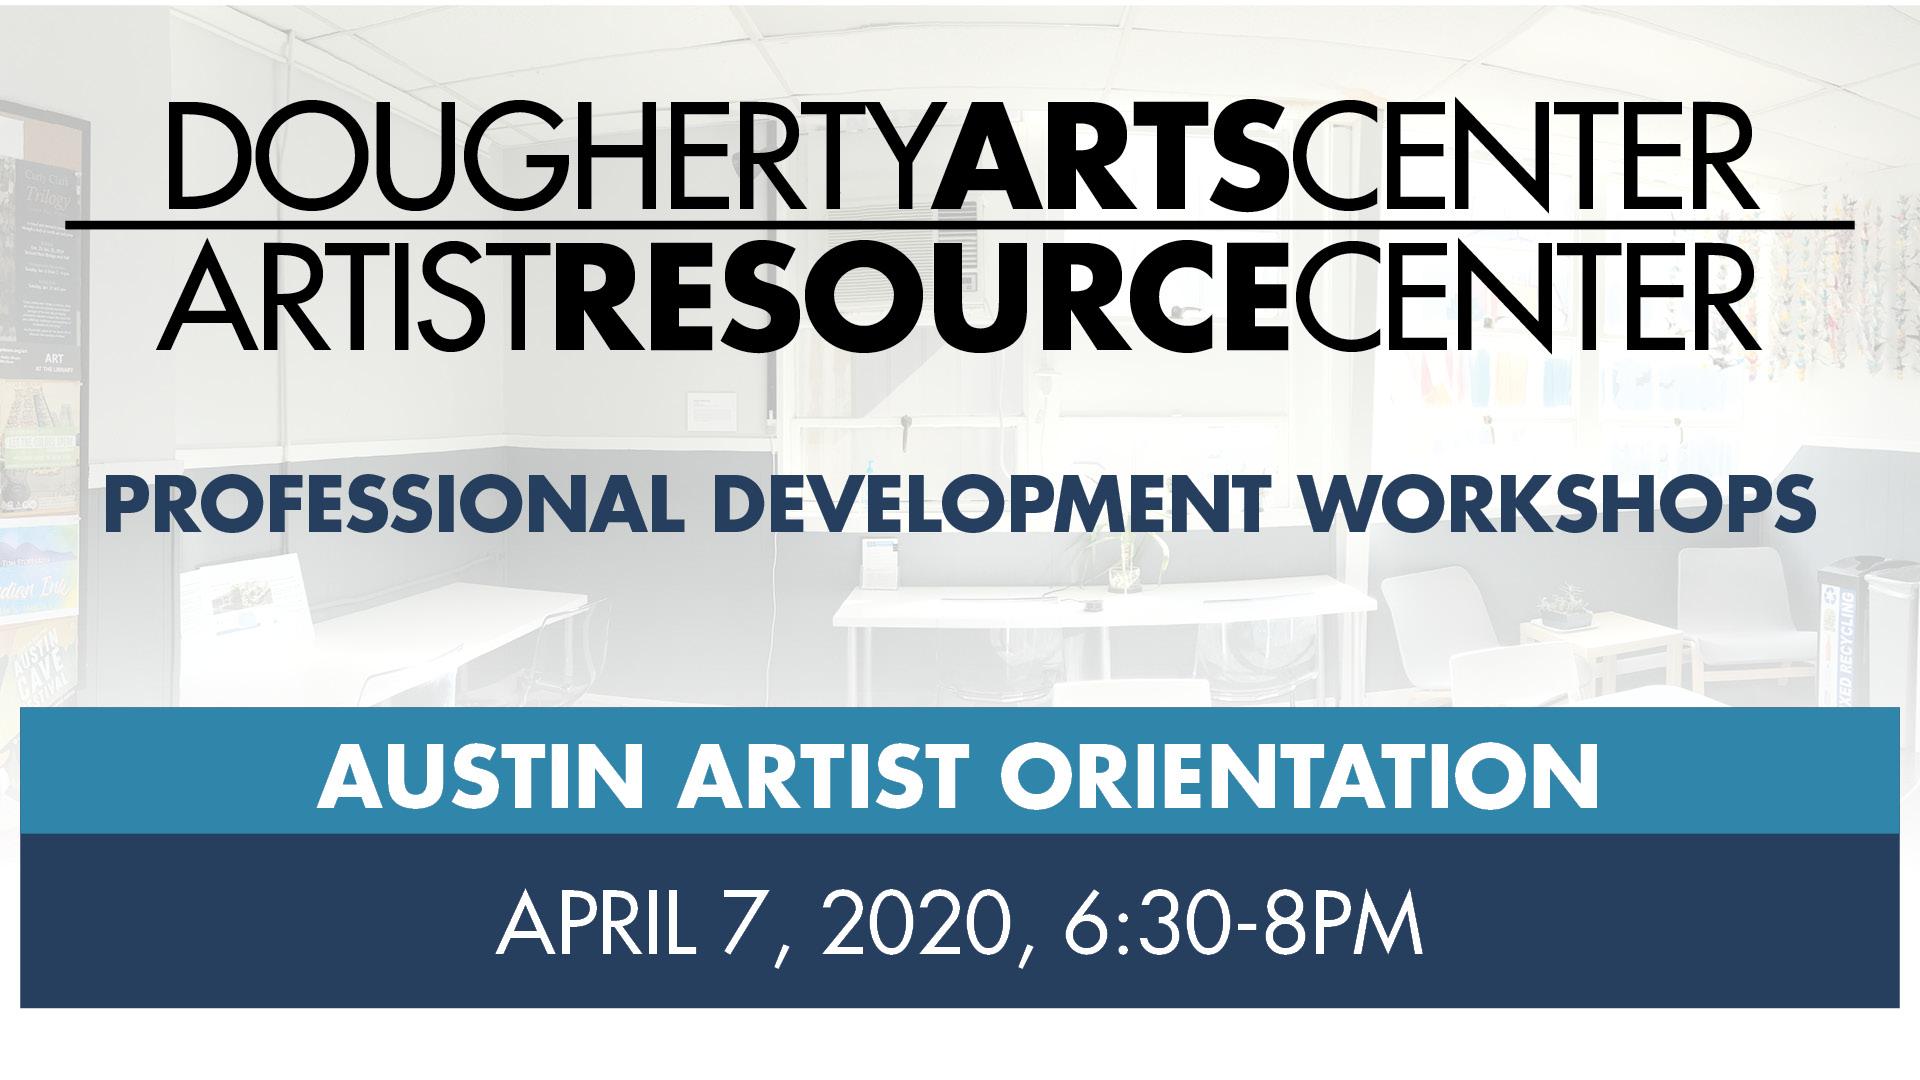 Austin Artist Orientation - Artist Resource Center